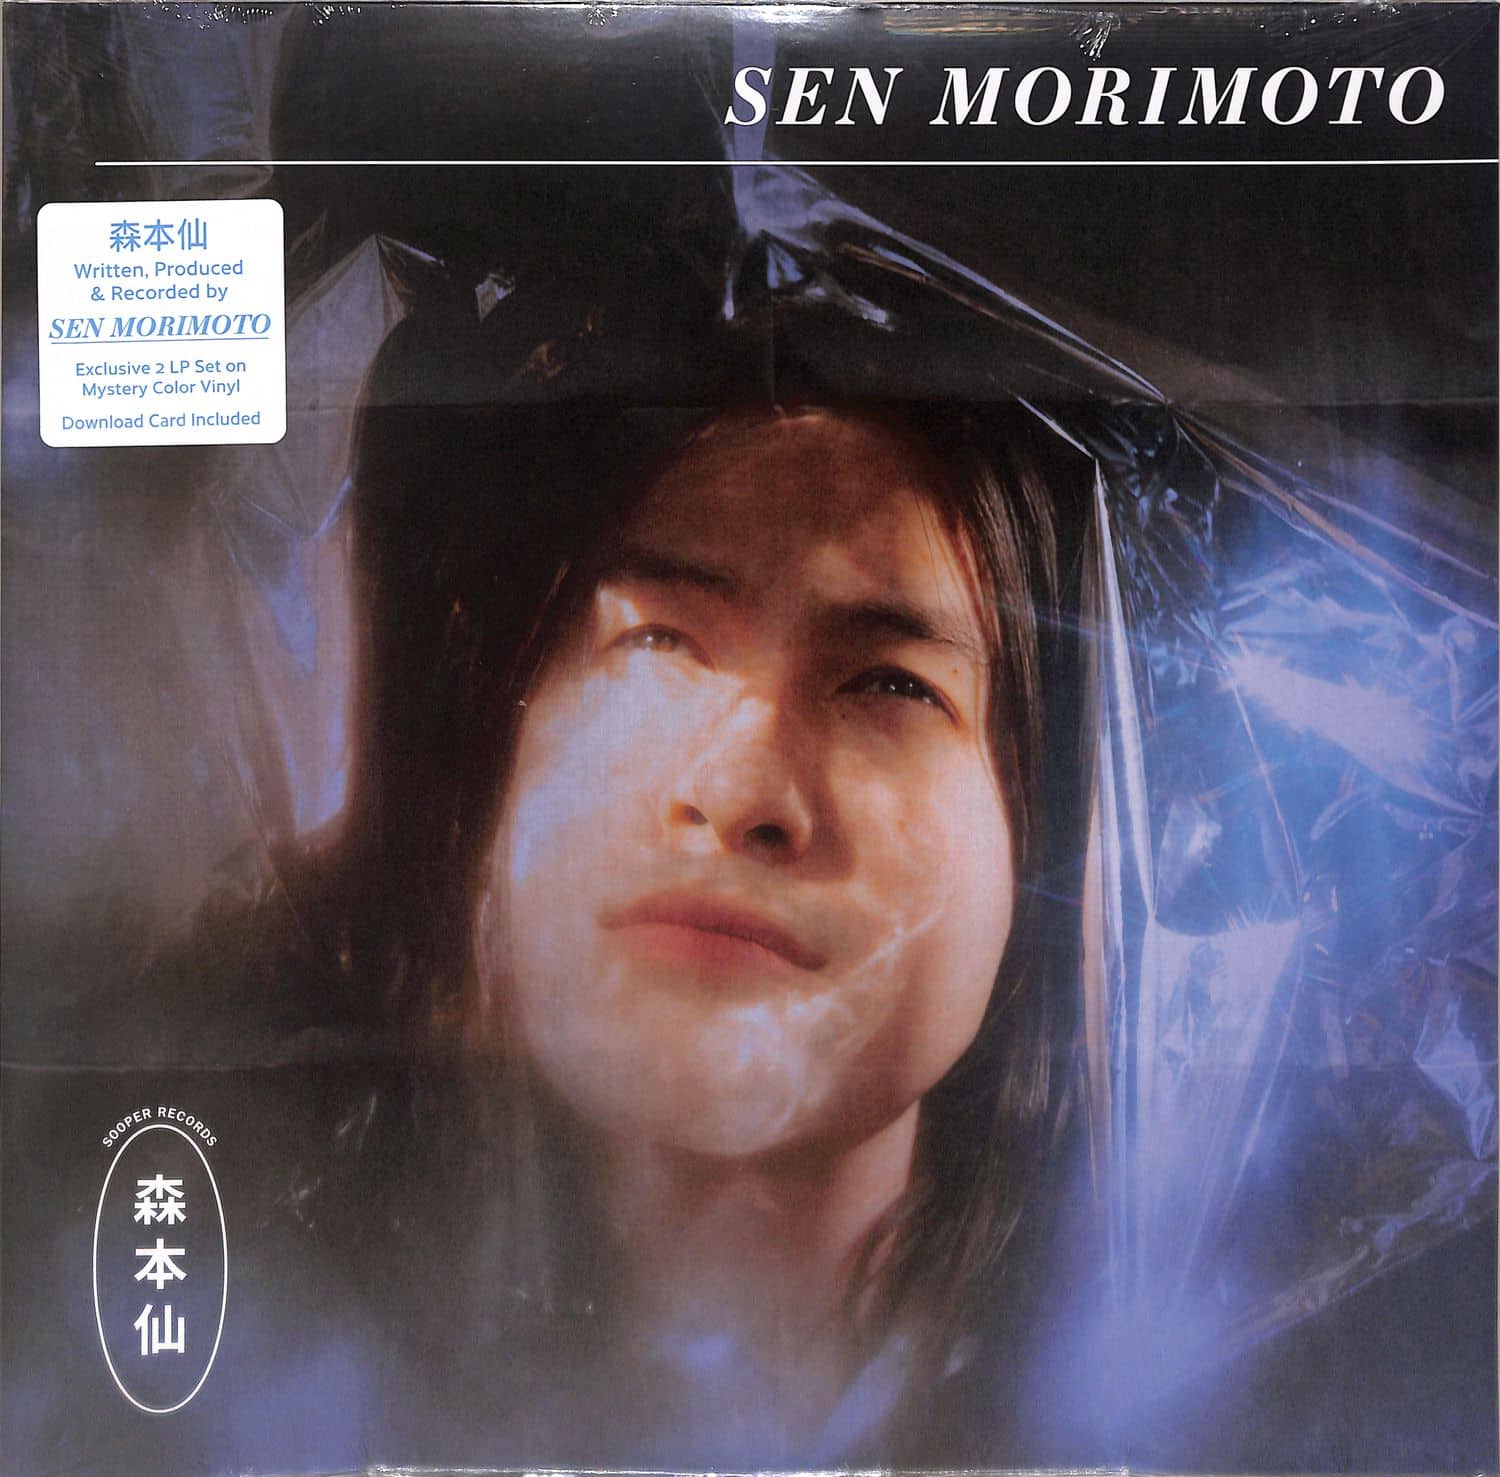 Sen Morimoto - SEN MORIMOTO 